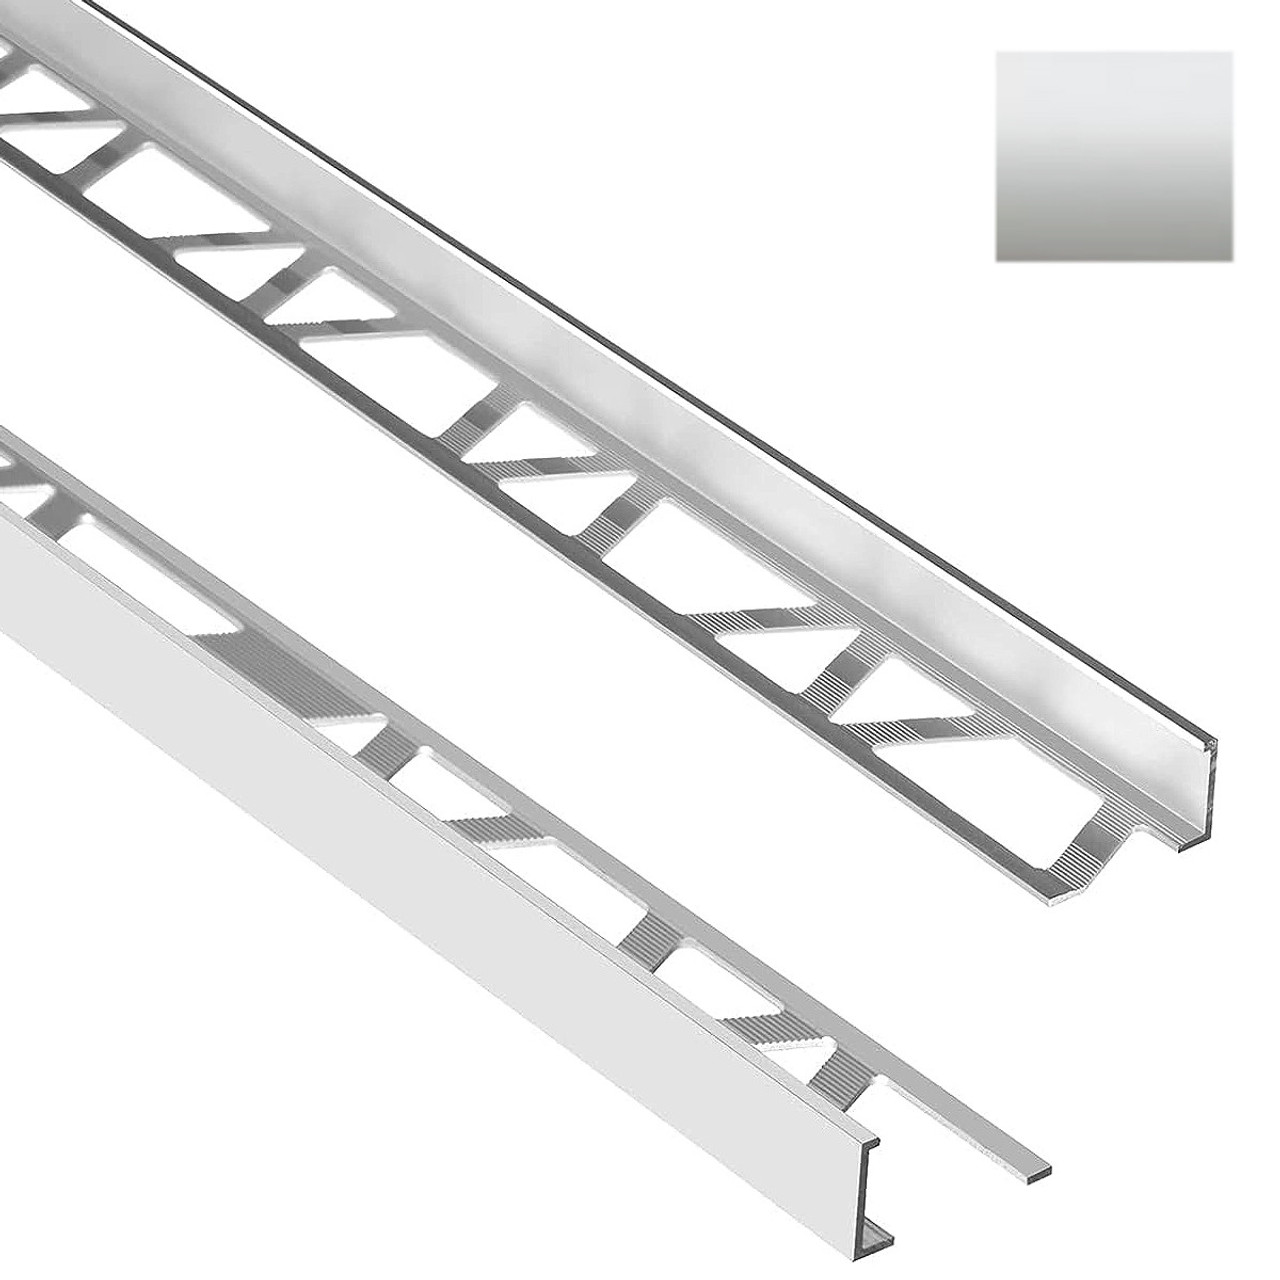 Aluminum Corner Protection Tile Trim